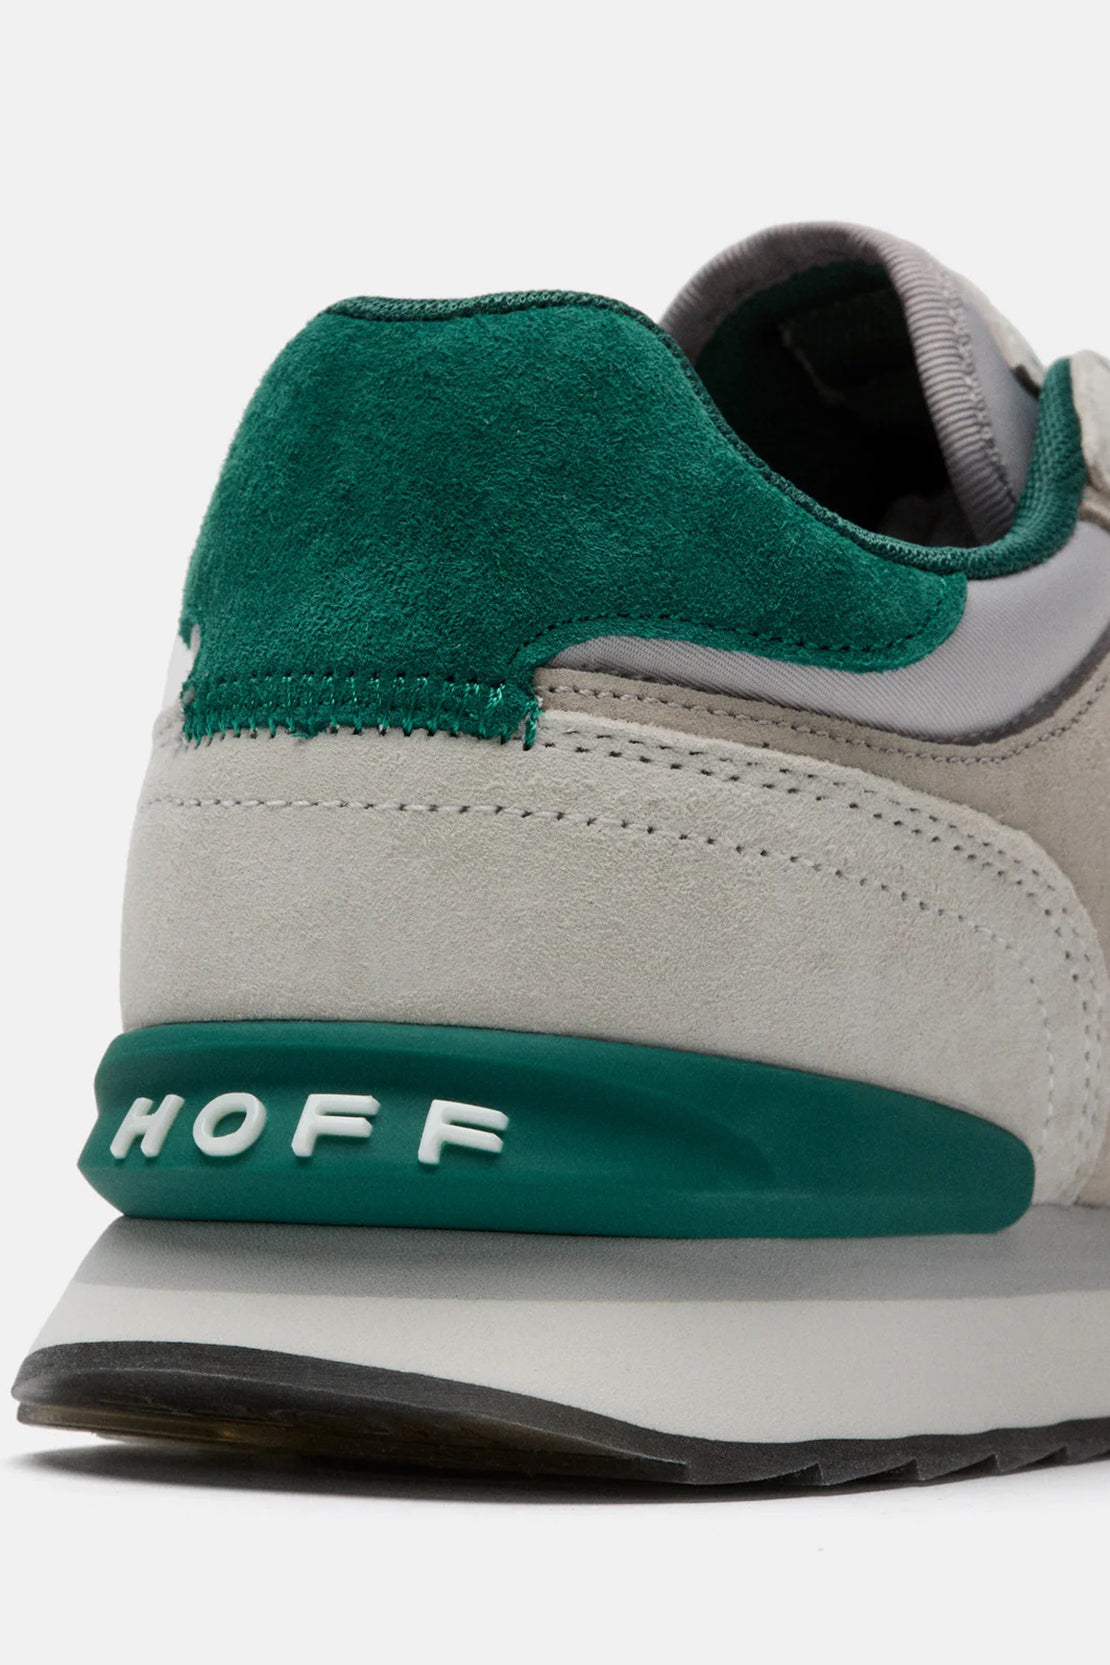 HOFF - FLORENCE - City Sneakers